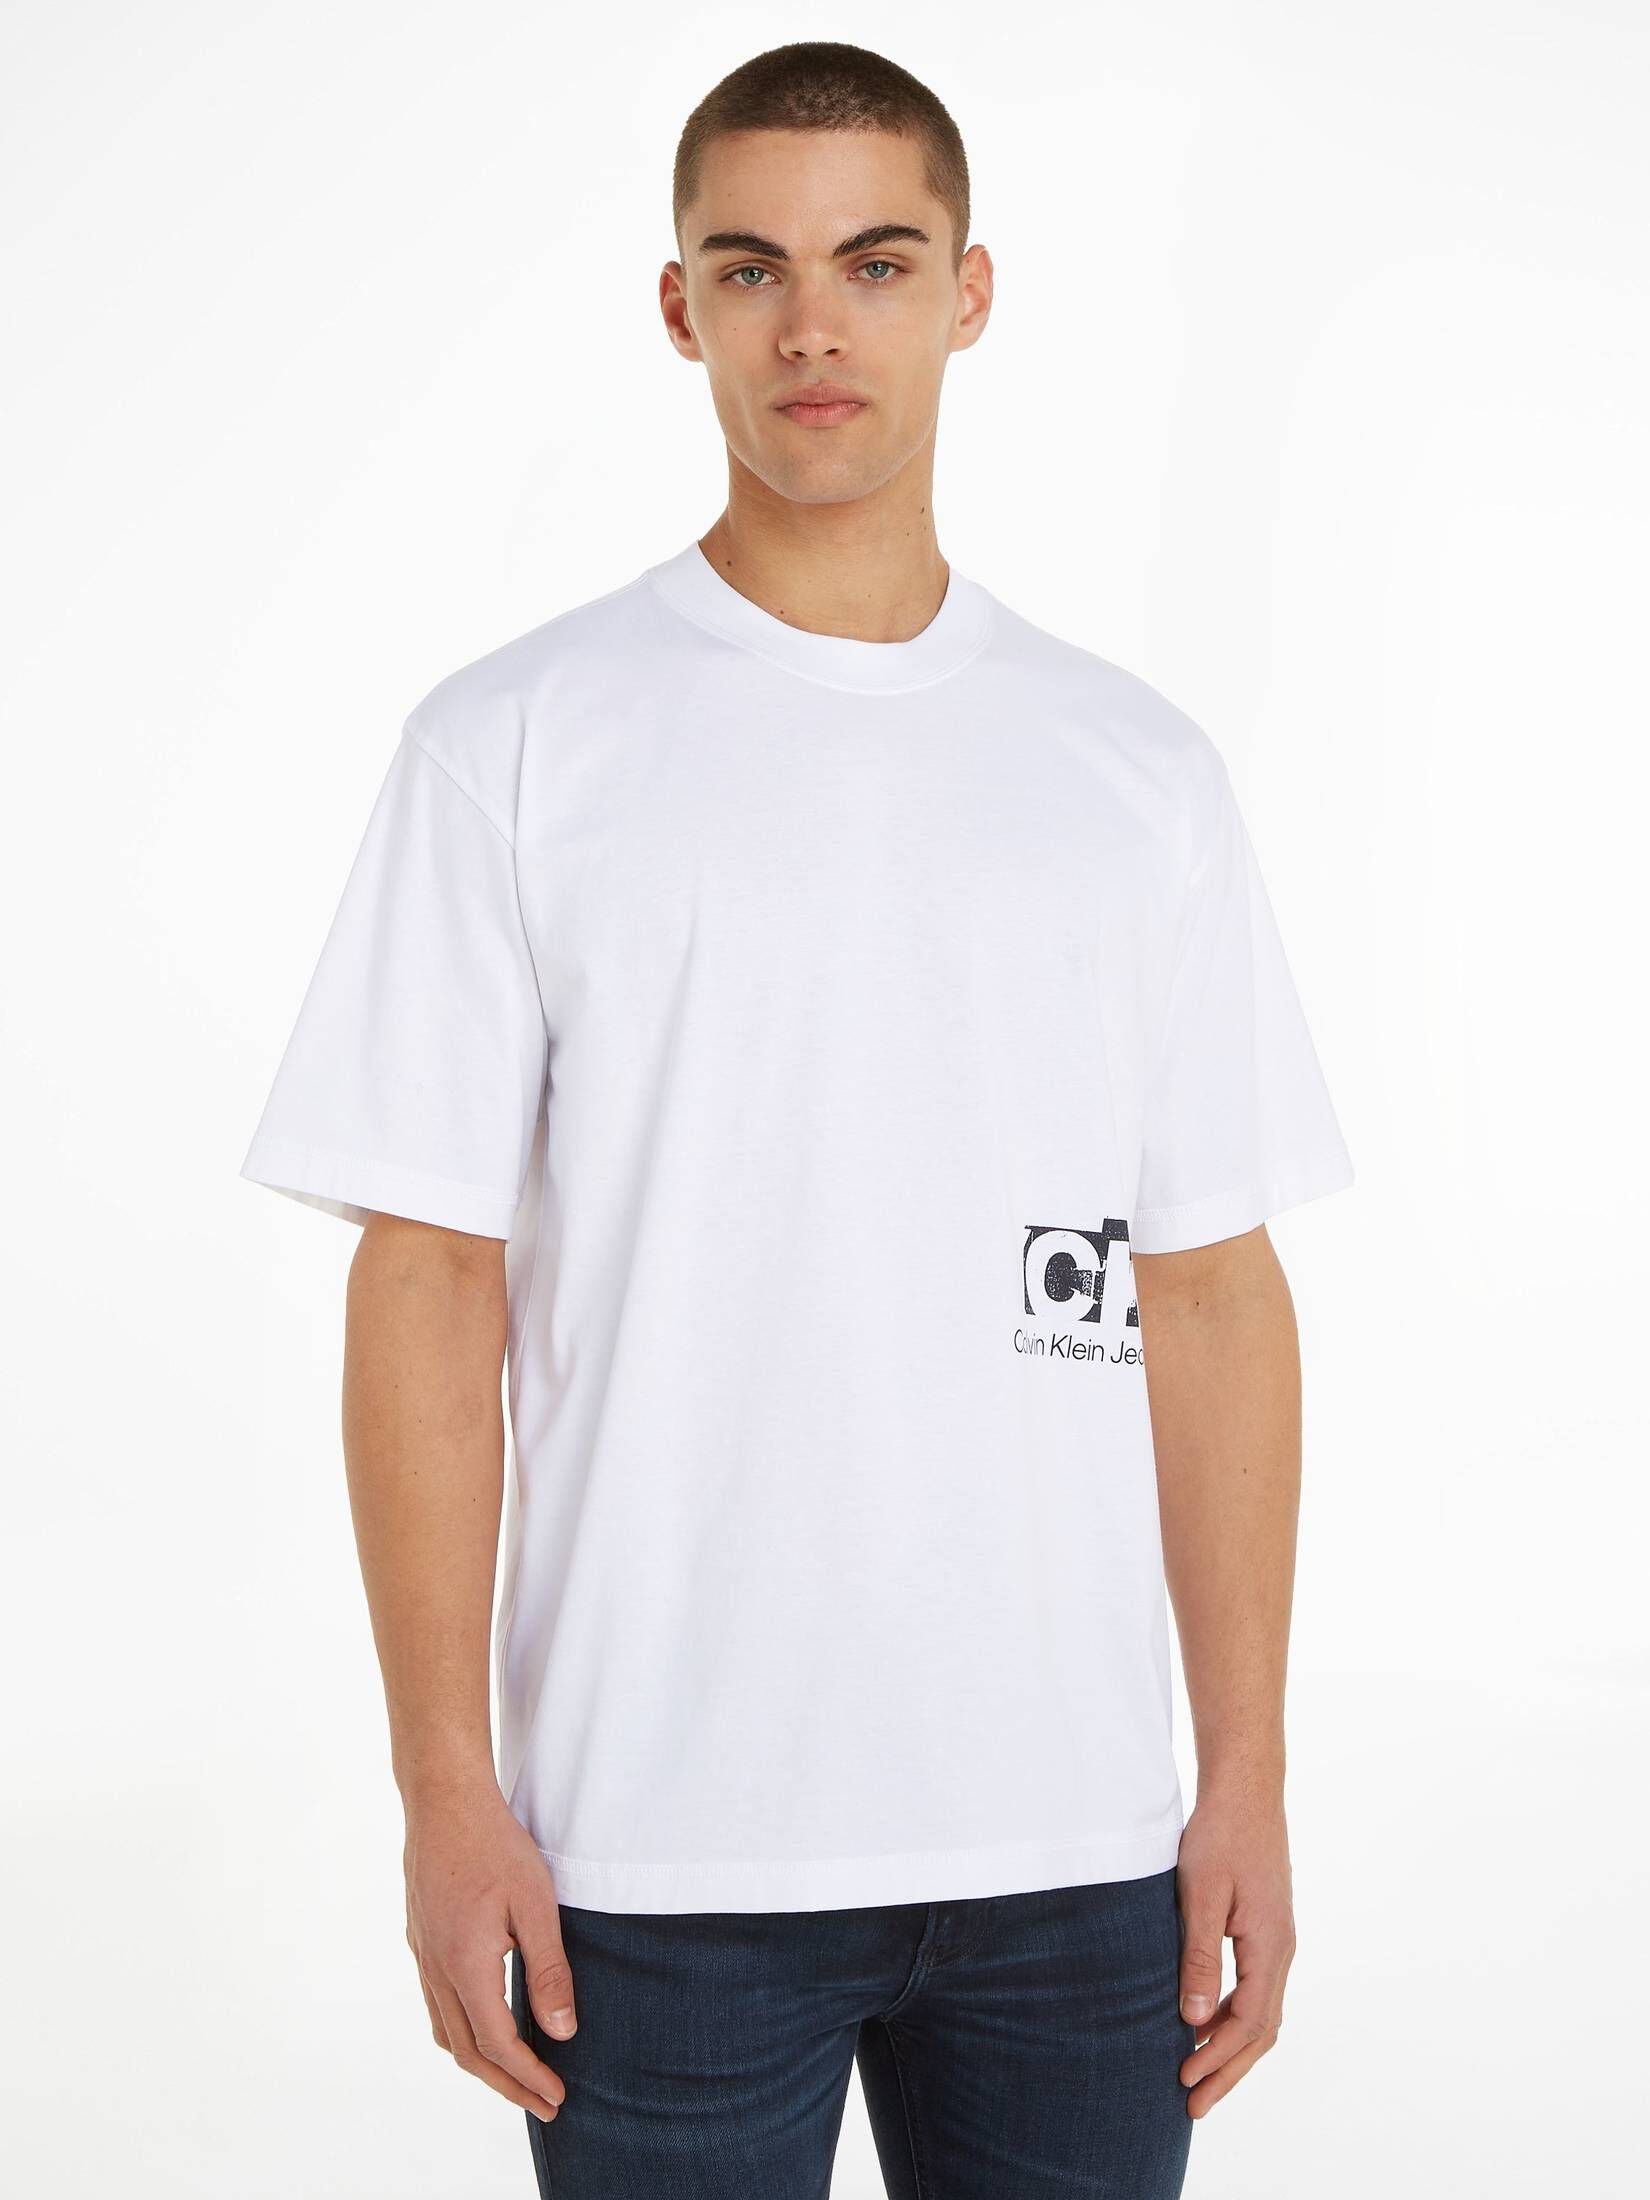 CALVIN KLEIN JEANS | LANDSCAPE TEE T-Shirt Oversized LAYER CONNECTED Bio-Baumwolle Herren kaufen mit Fit engelhorn